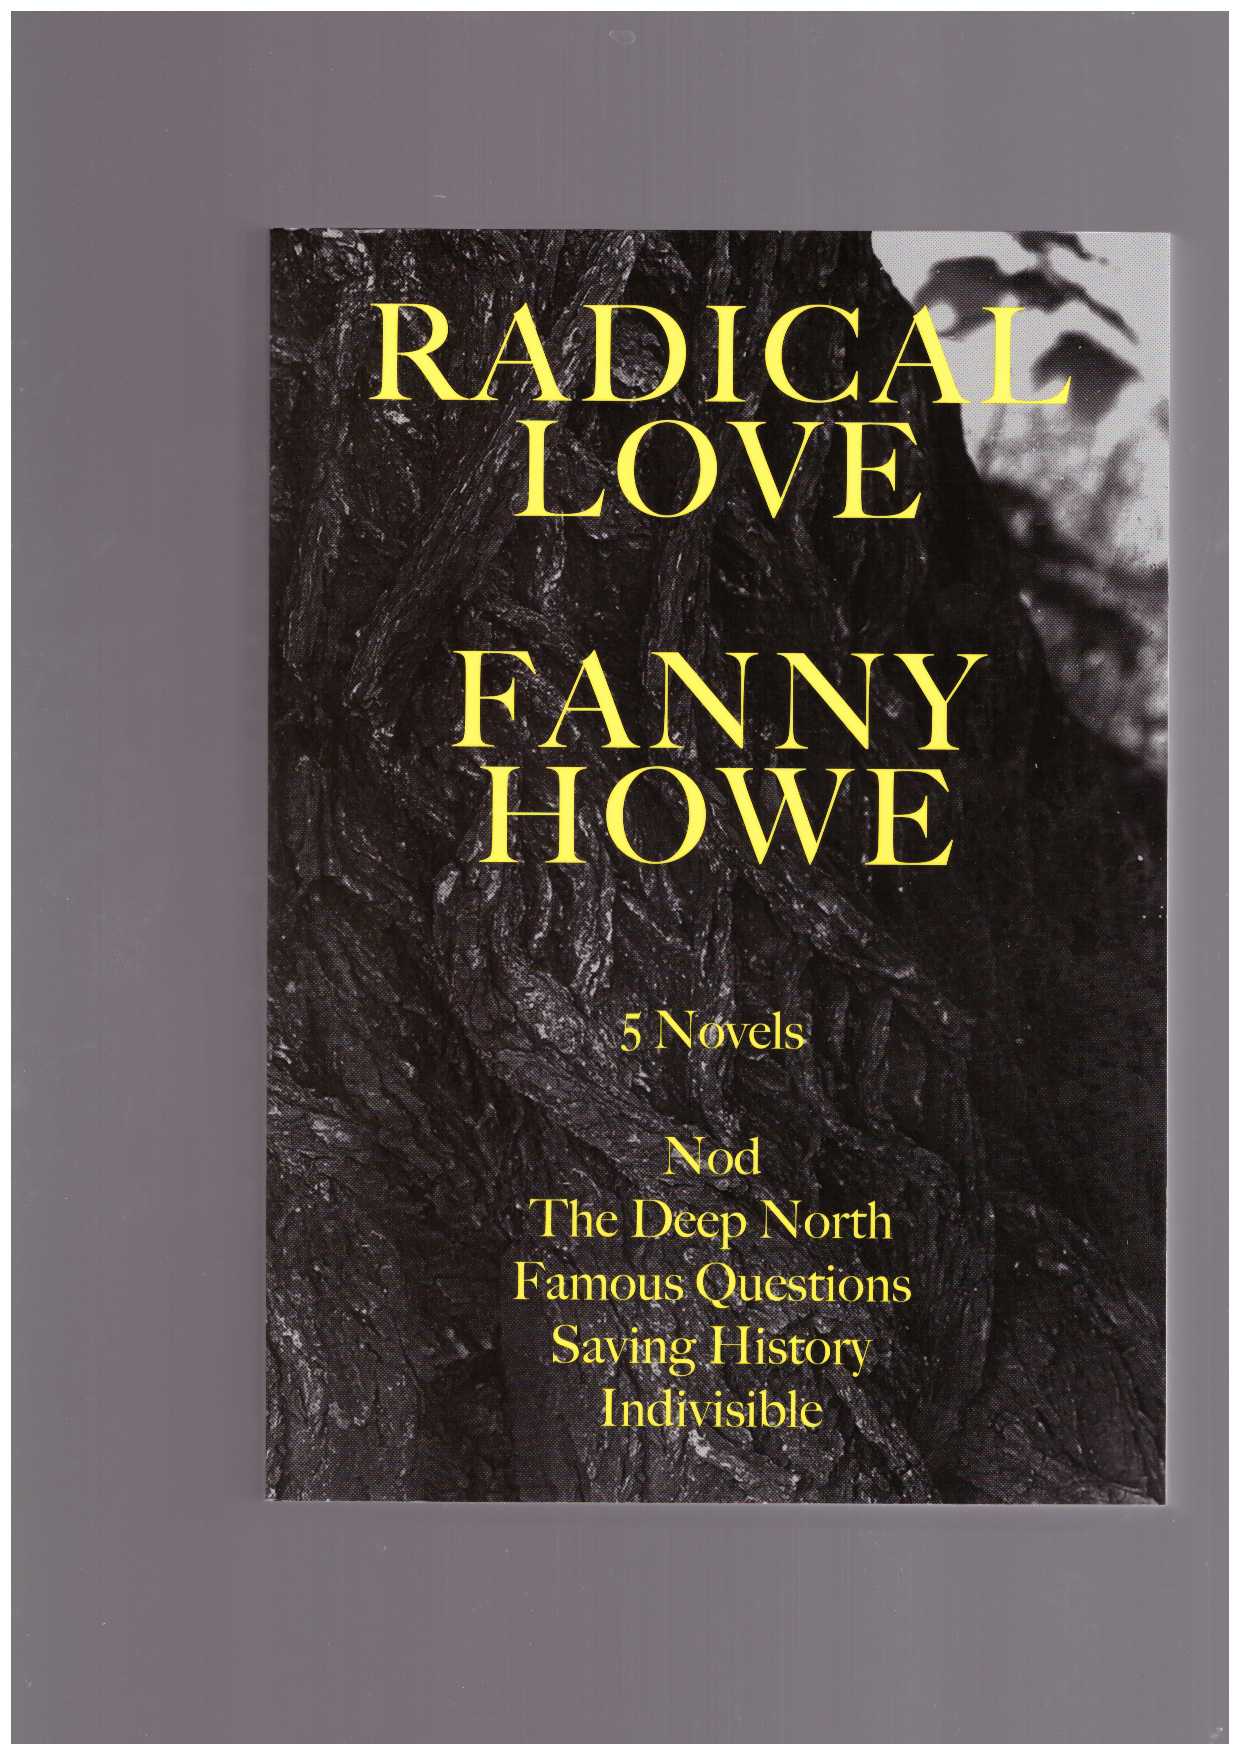 HOWE, Fanny - Radical Love : Five novels